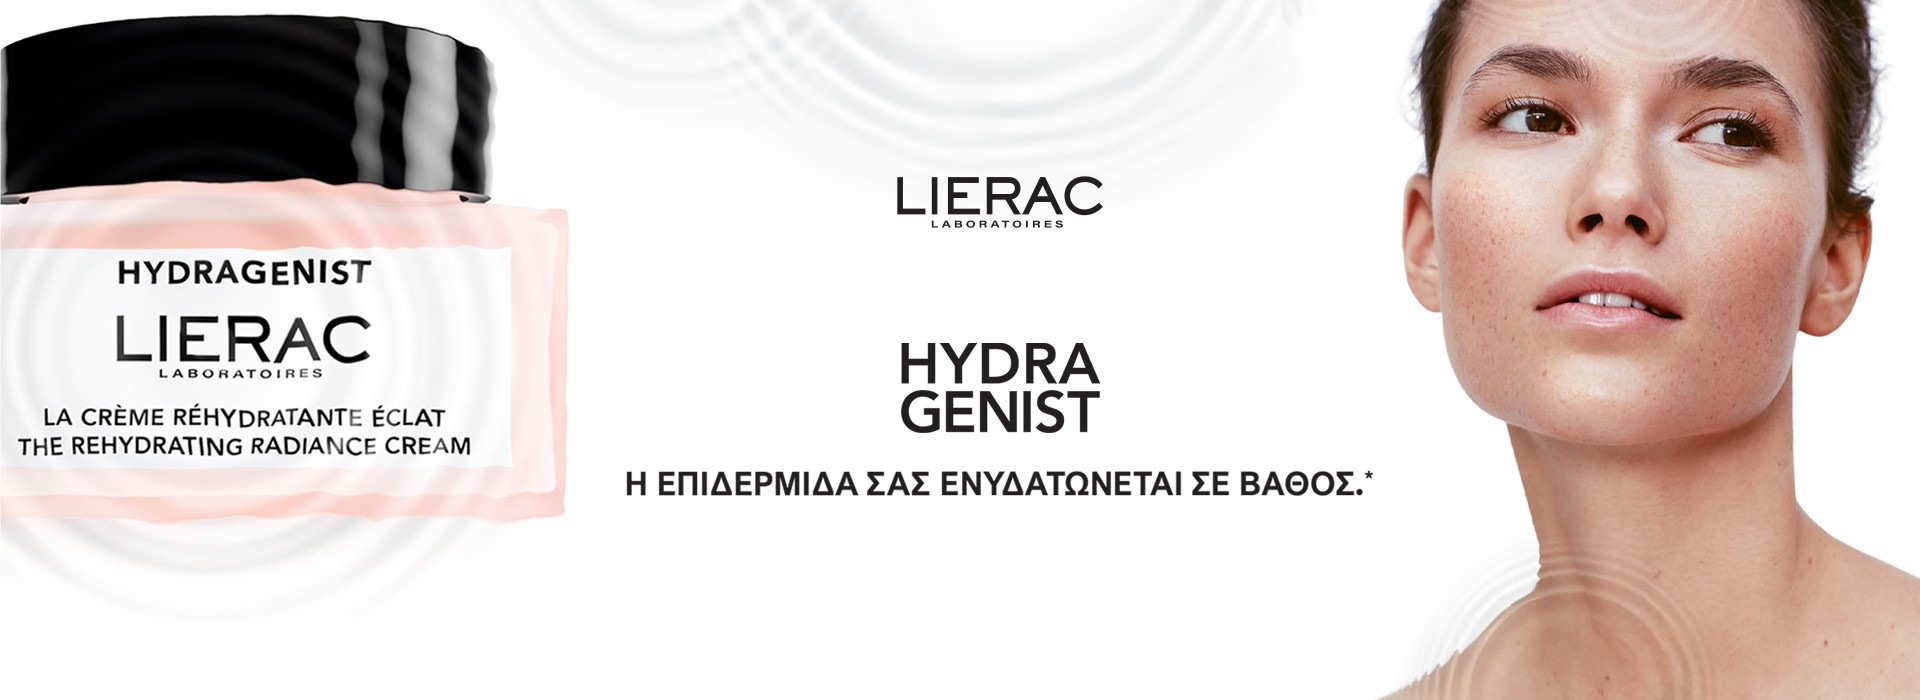 Lierac Hydragenist